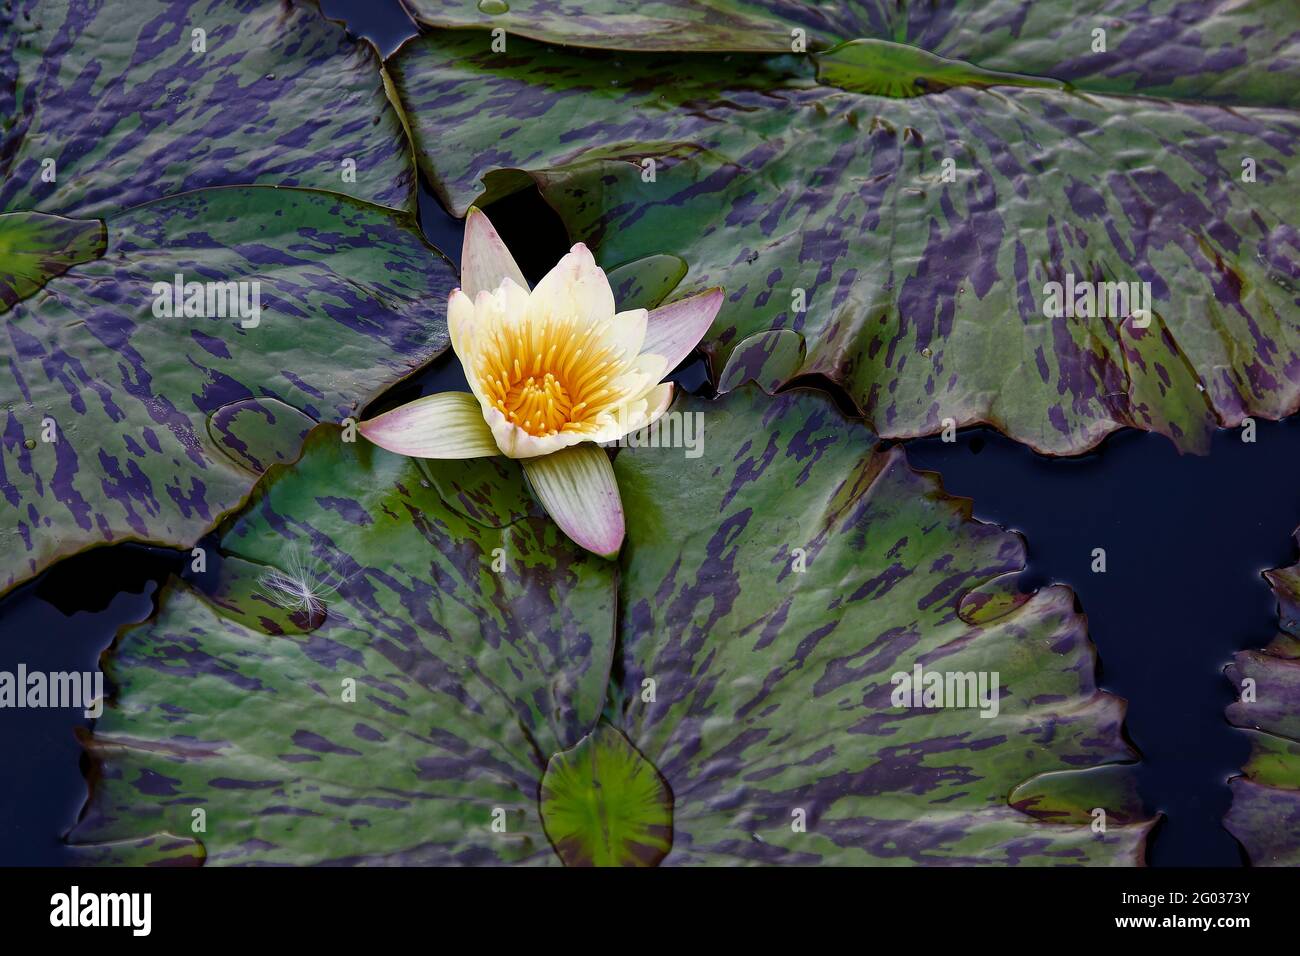 giglio d'acqua, giallo pallido, centro giallo scuro, foglie verdi bicolore, closep-up, natura, fiore coltificato, Foto Stock